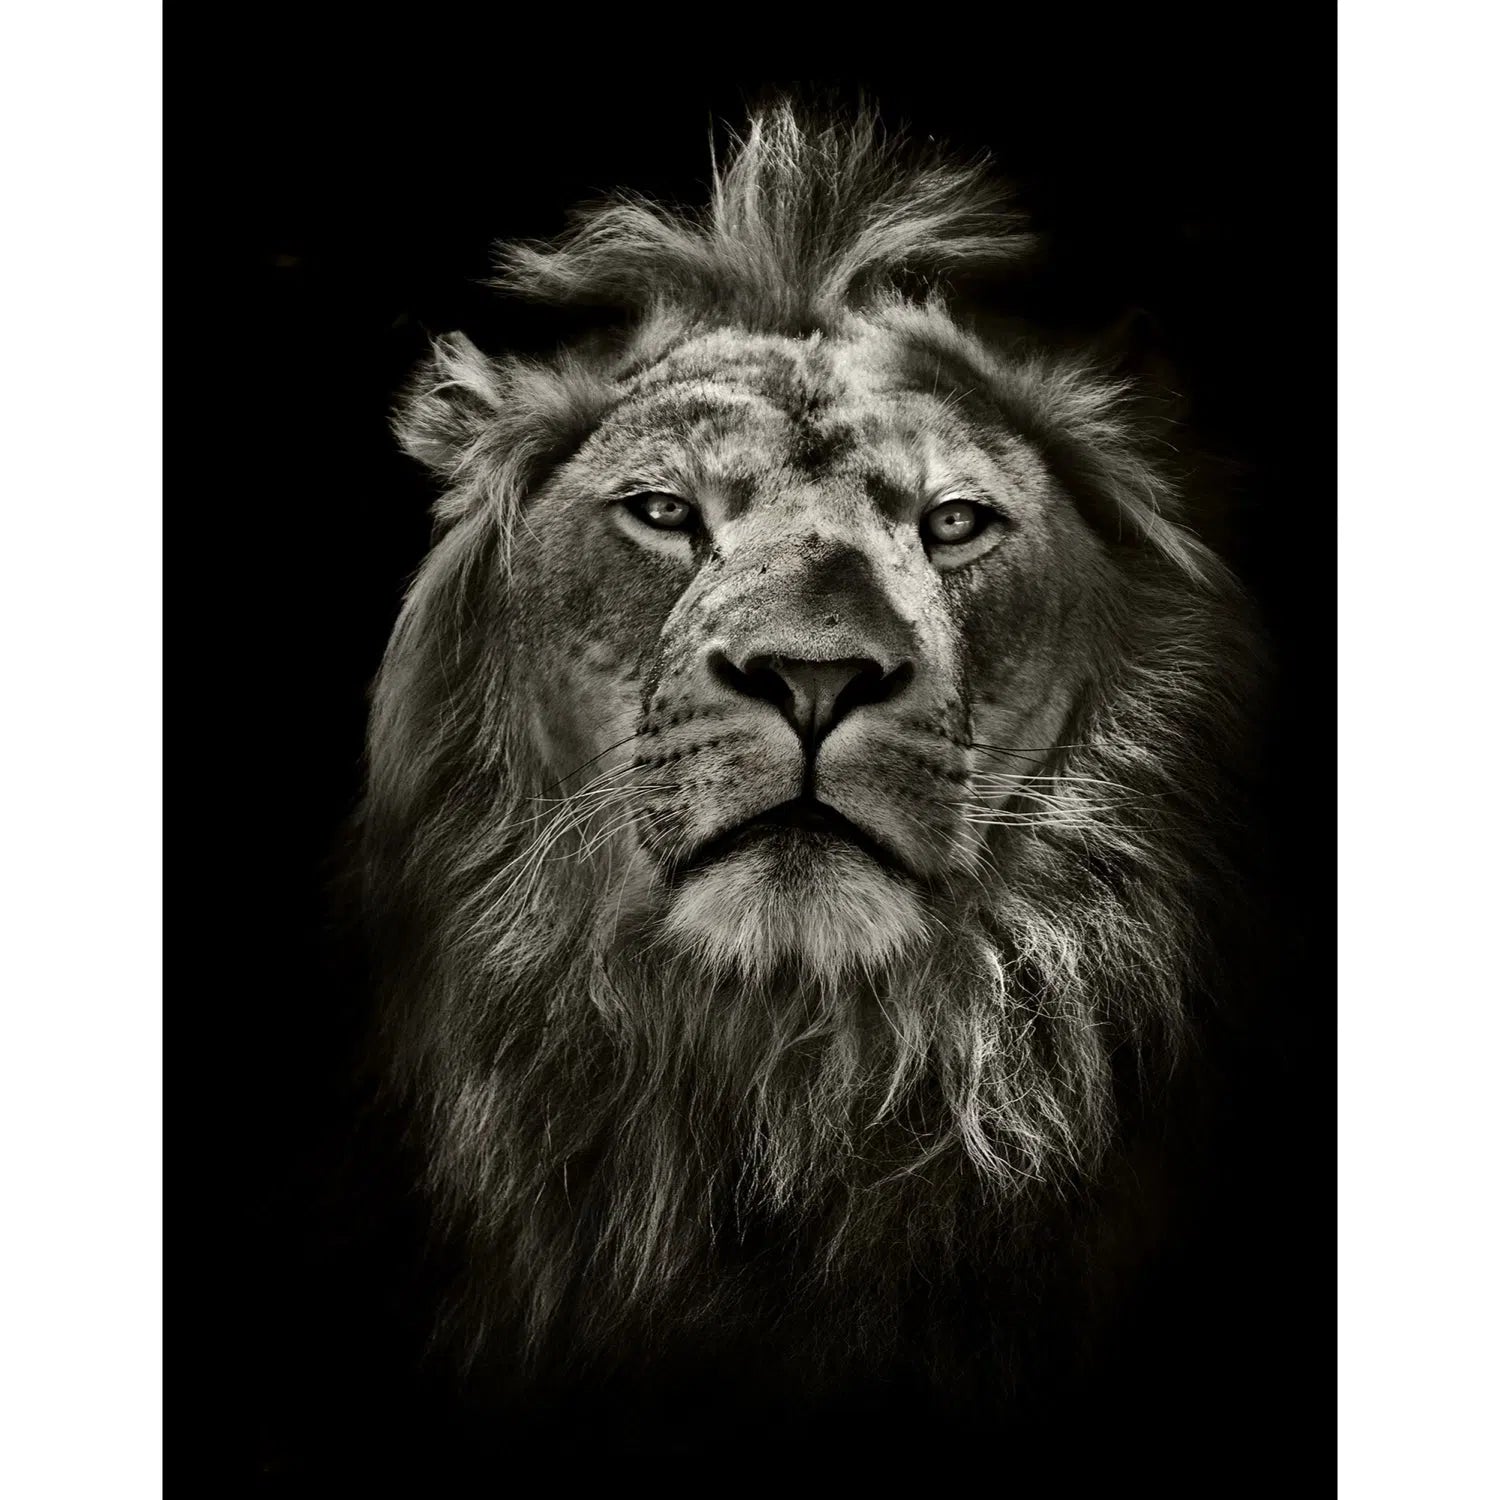 Le lion qui ne vous quitte pas des yeux !-Imagesdartistes